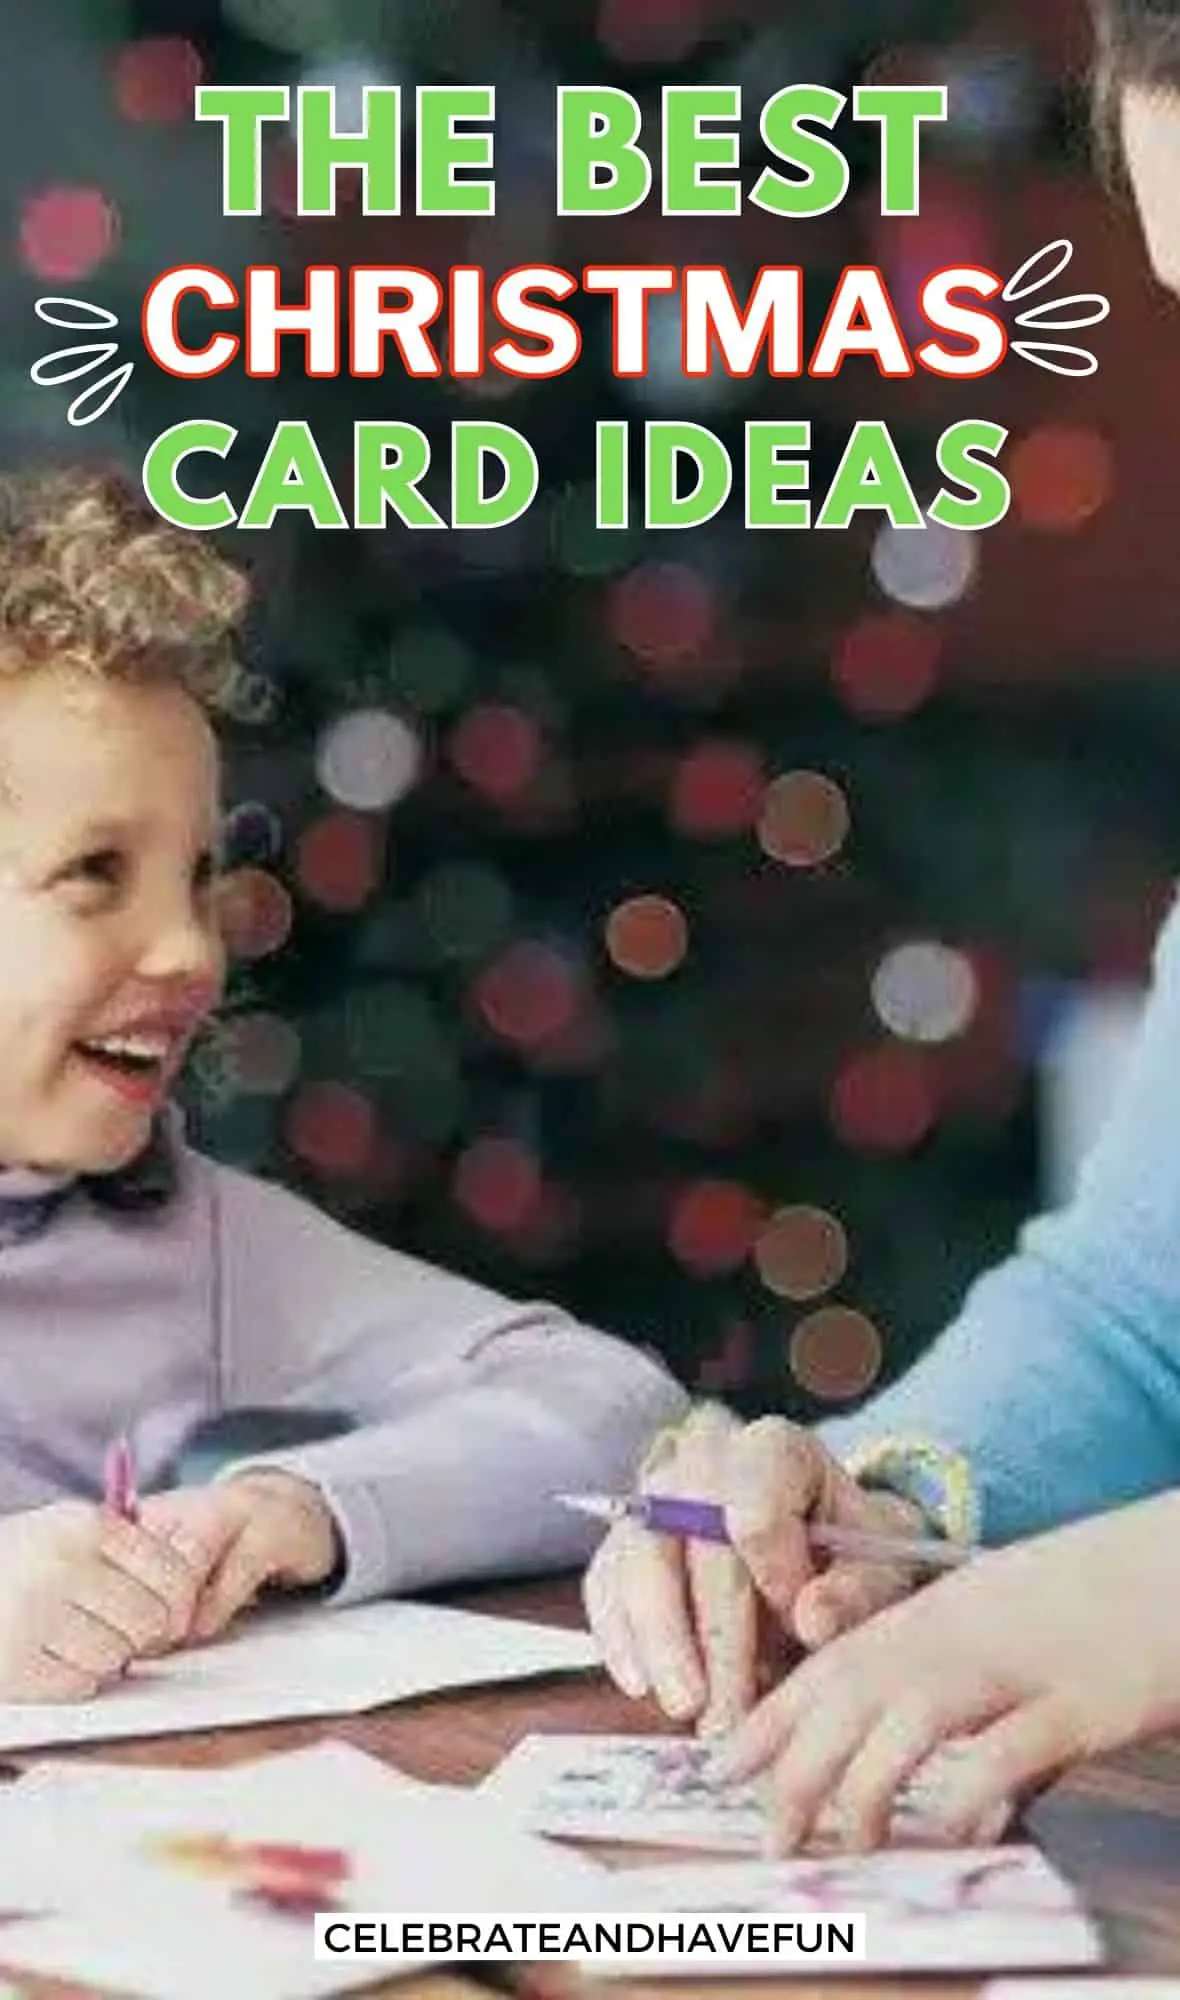 The best Christmas card ideas